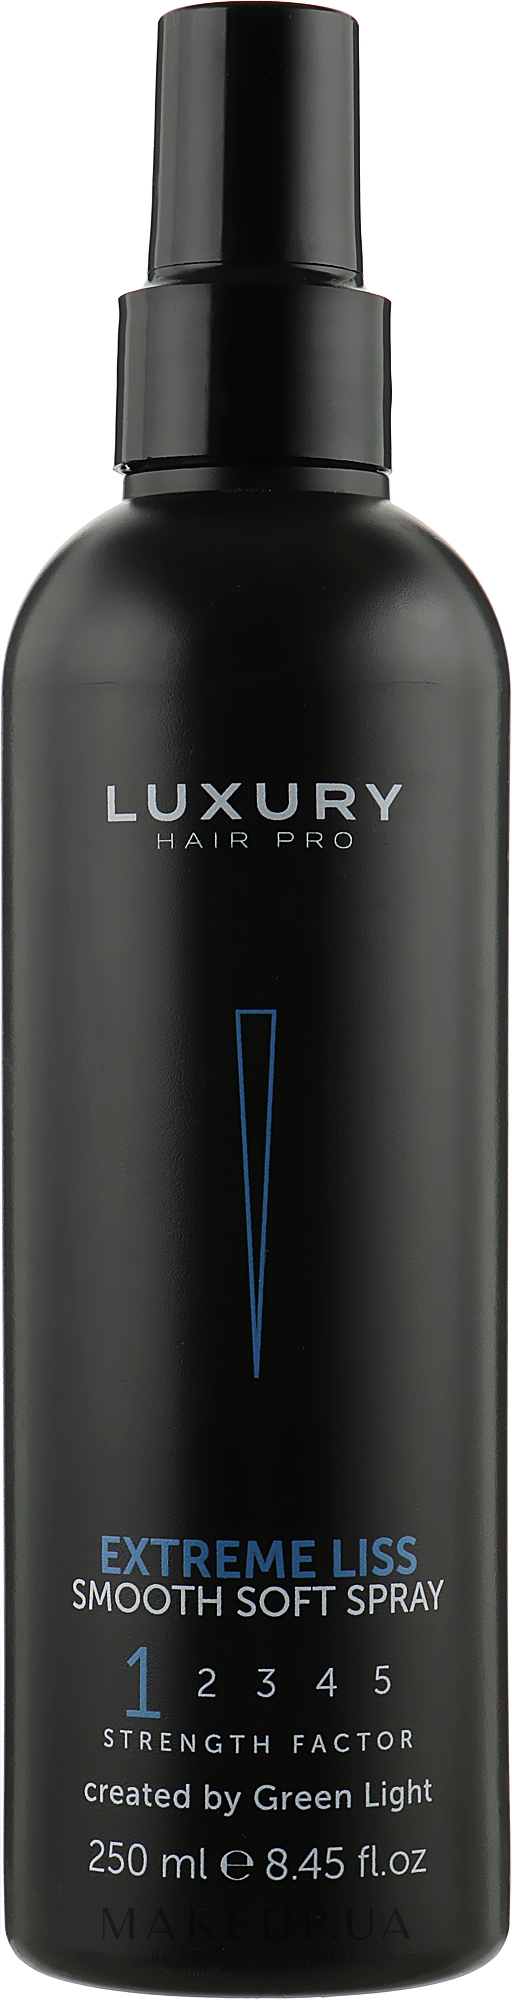 М'який розгладжувальний спрей для волосся - Green Light Luxury Hair Pro Extreme Liss Smooth Soft Spray — фото 250ml